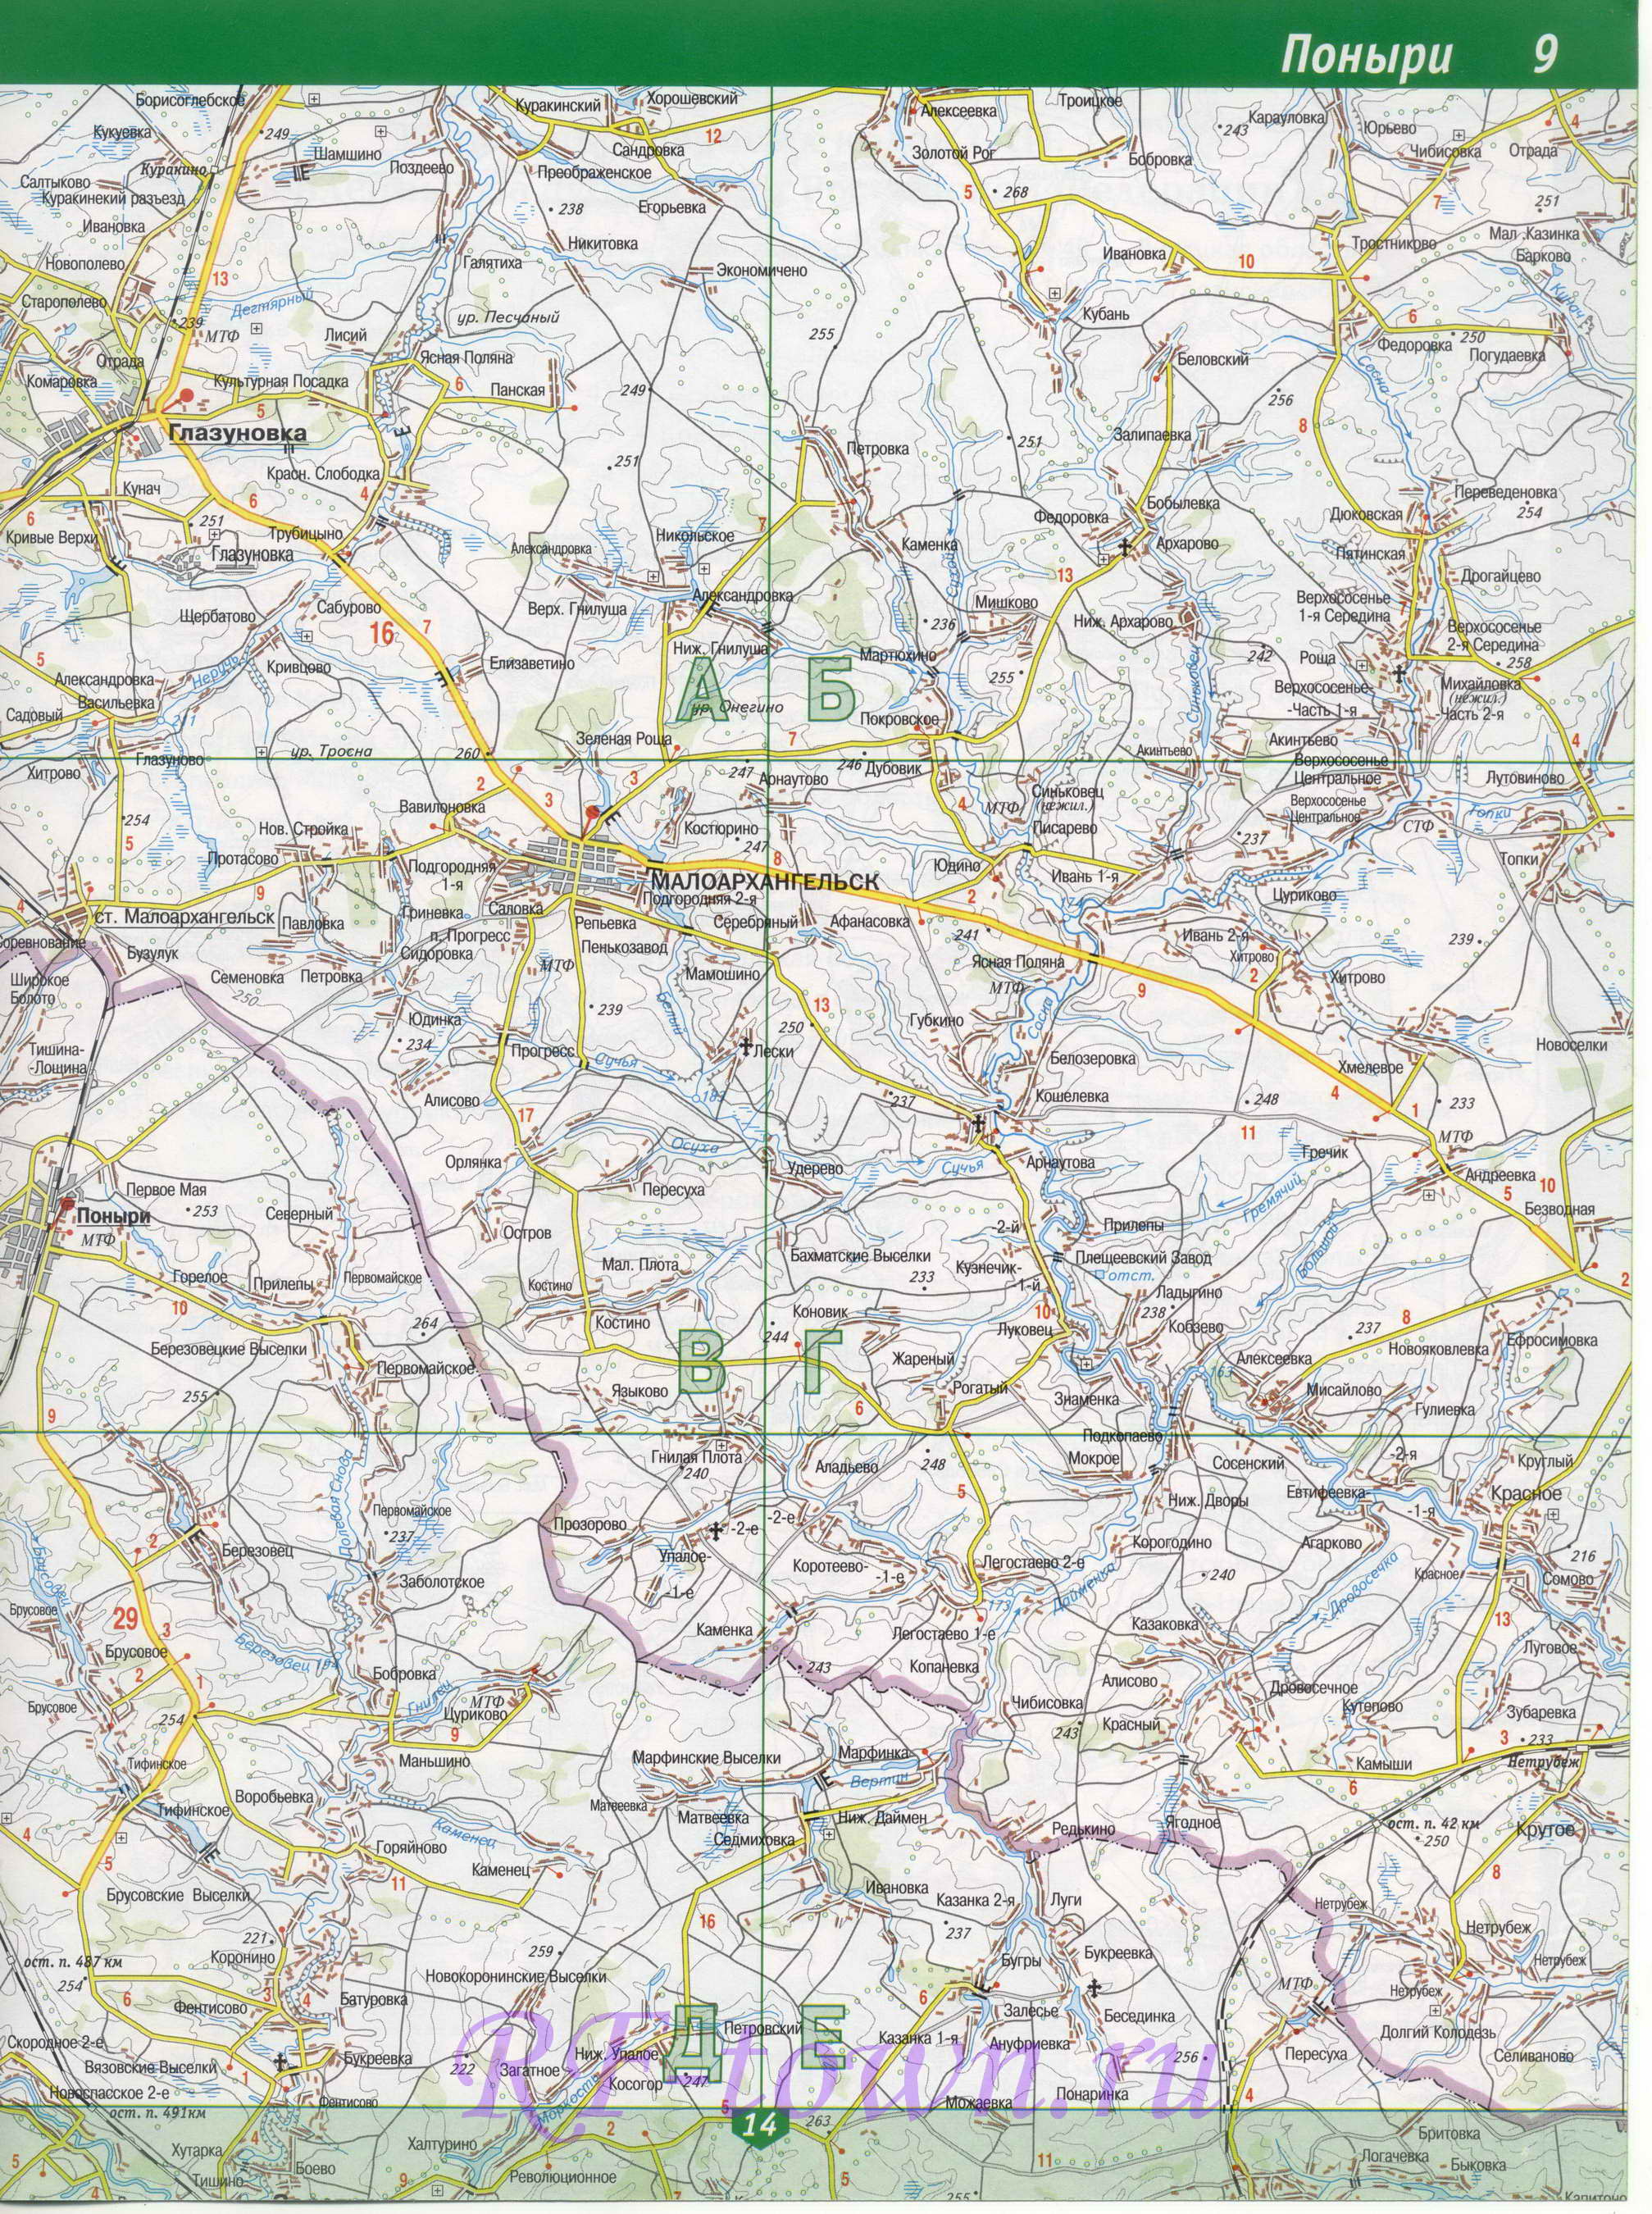 Карта Поныровского района Курской области. Подробная карта Поныровский район, B0 - 